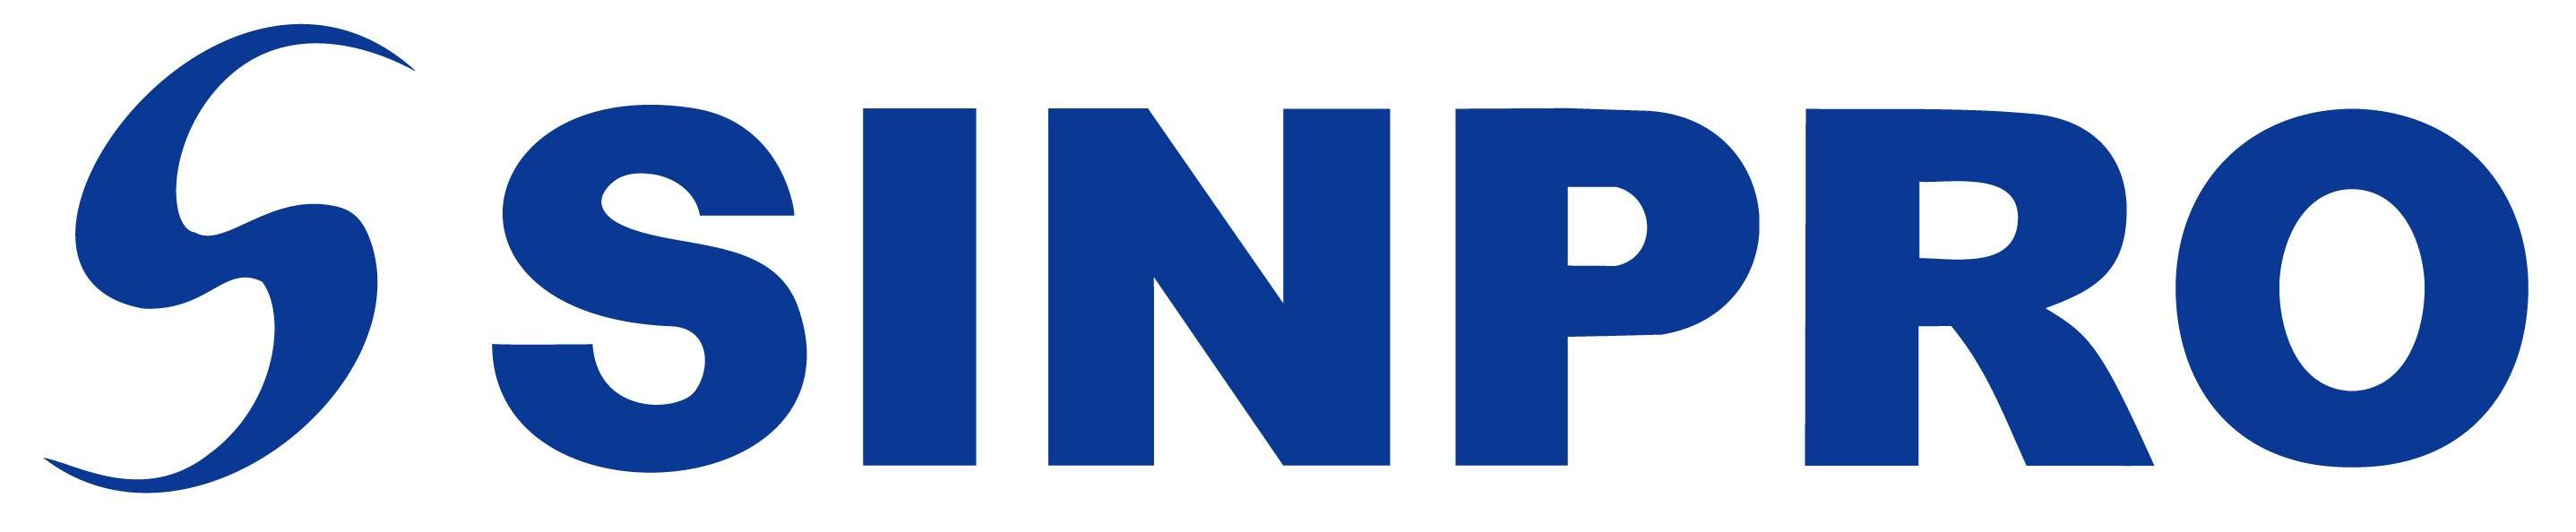 星博電子股份有限公司-Logo